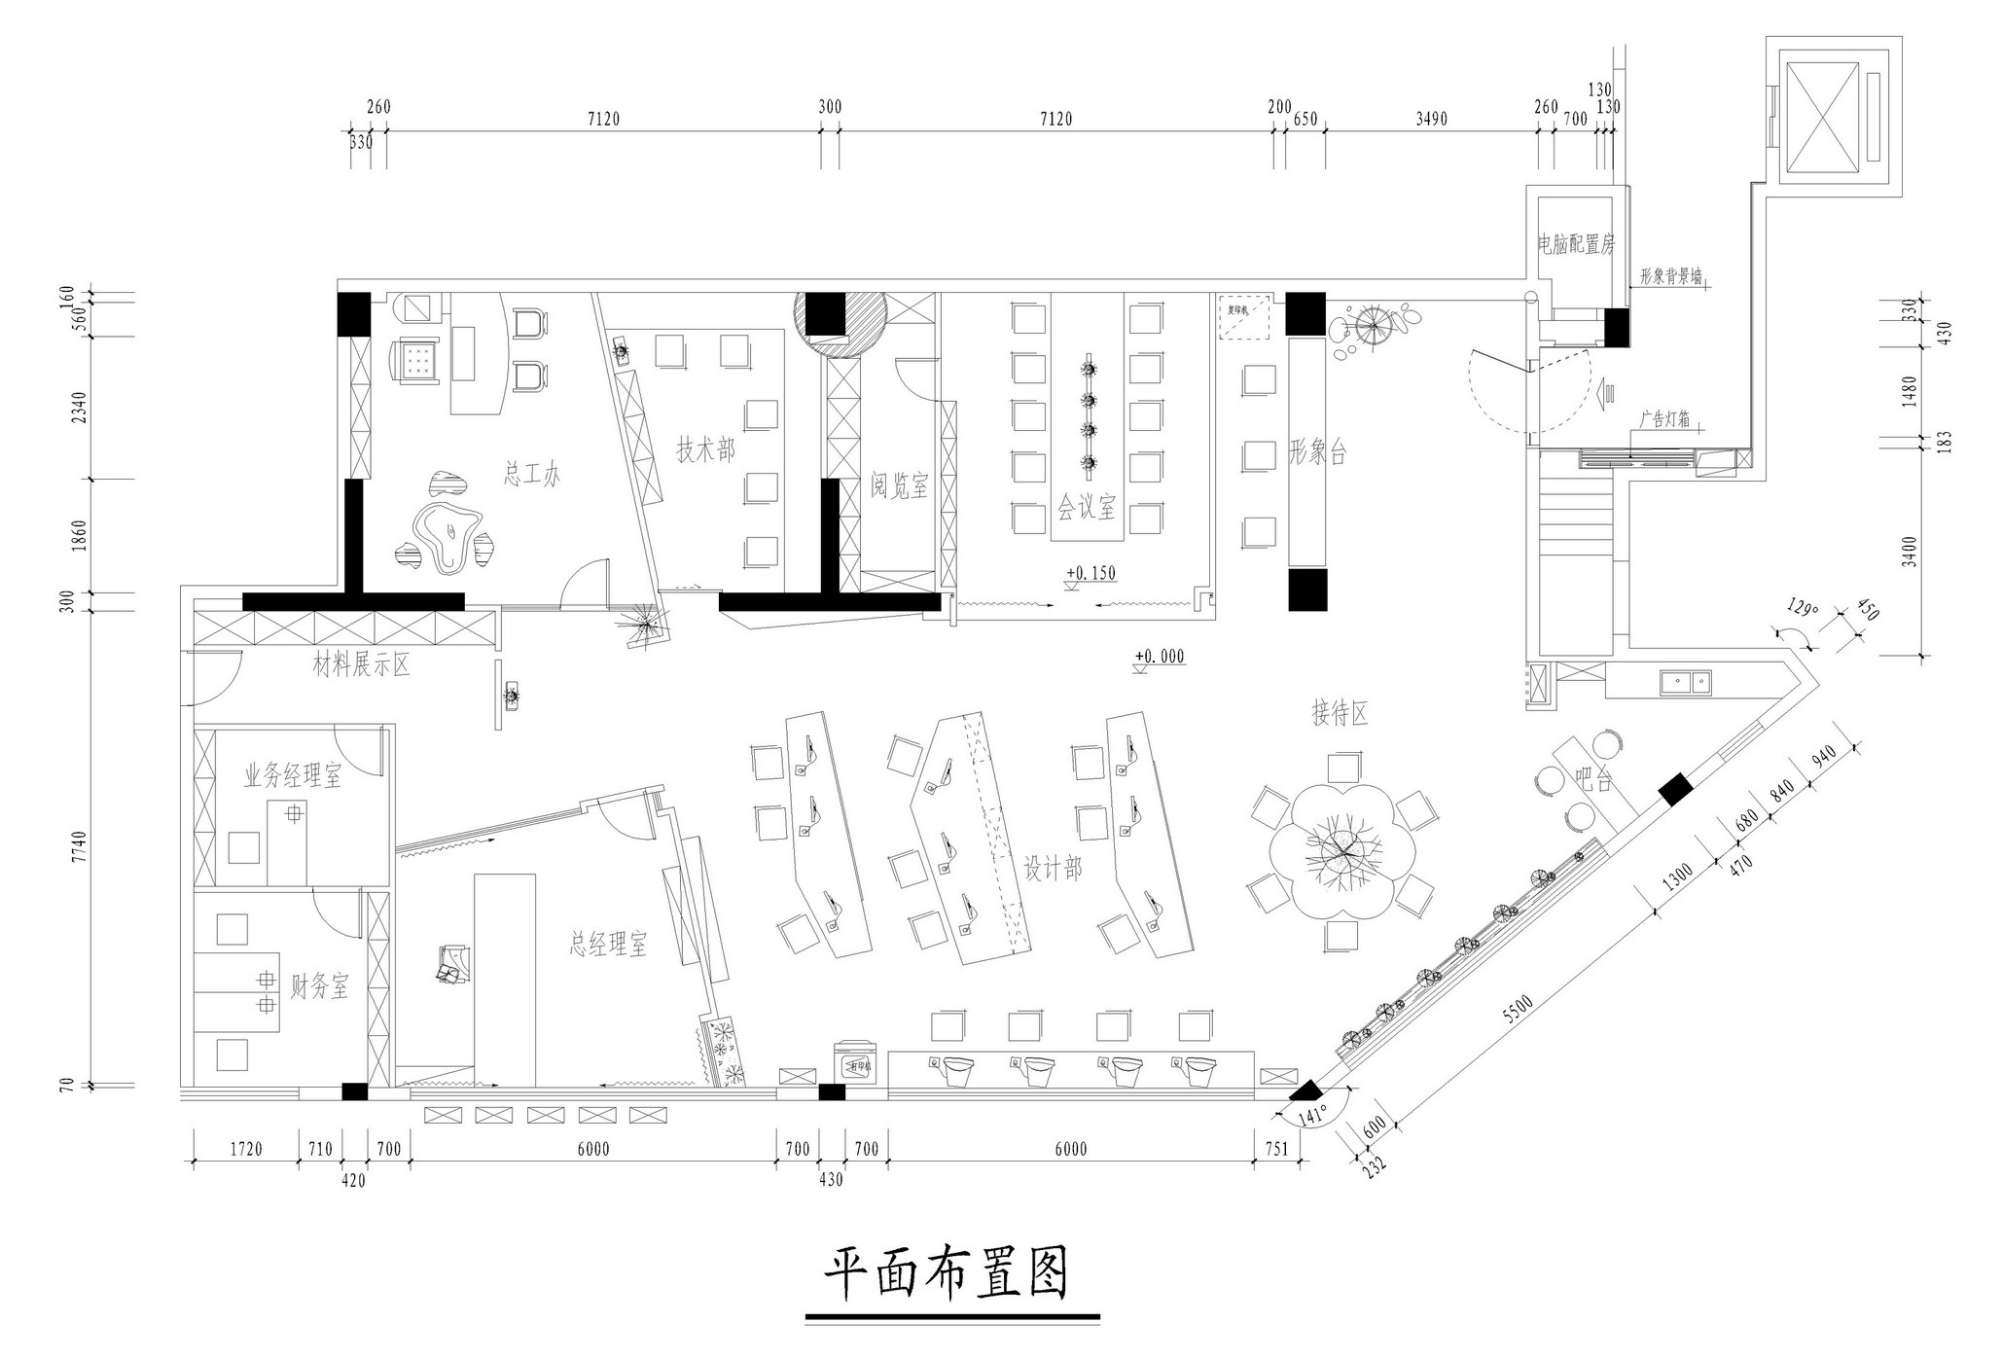 罗湖区本地办公室装修设计一体化服务 欢迎咨询 深圳市大良岗建设集团供应